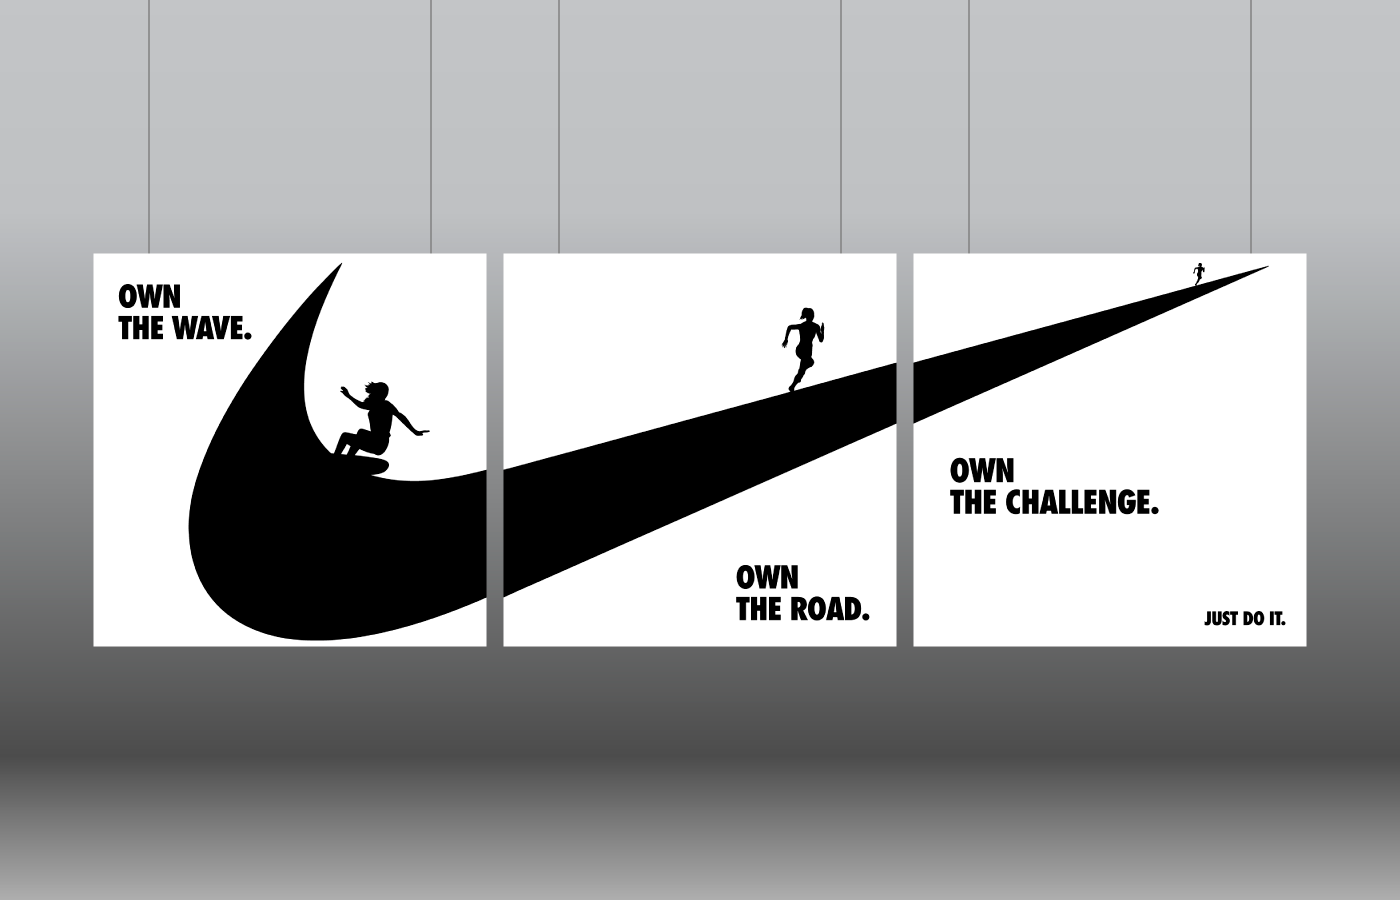 llorar Coincidencia El uno al otro Nike advertising - Just do it on Behance